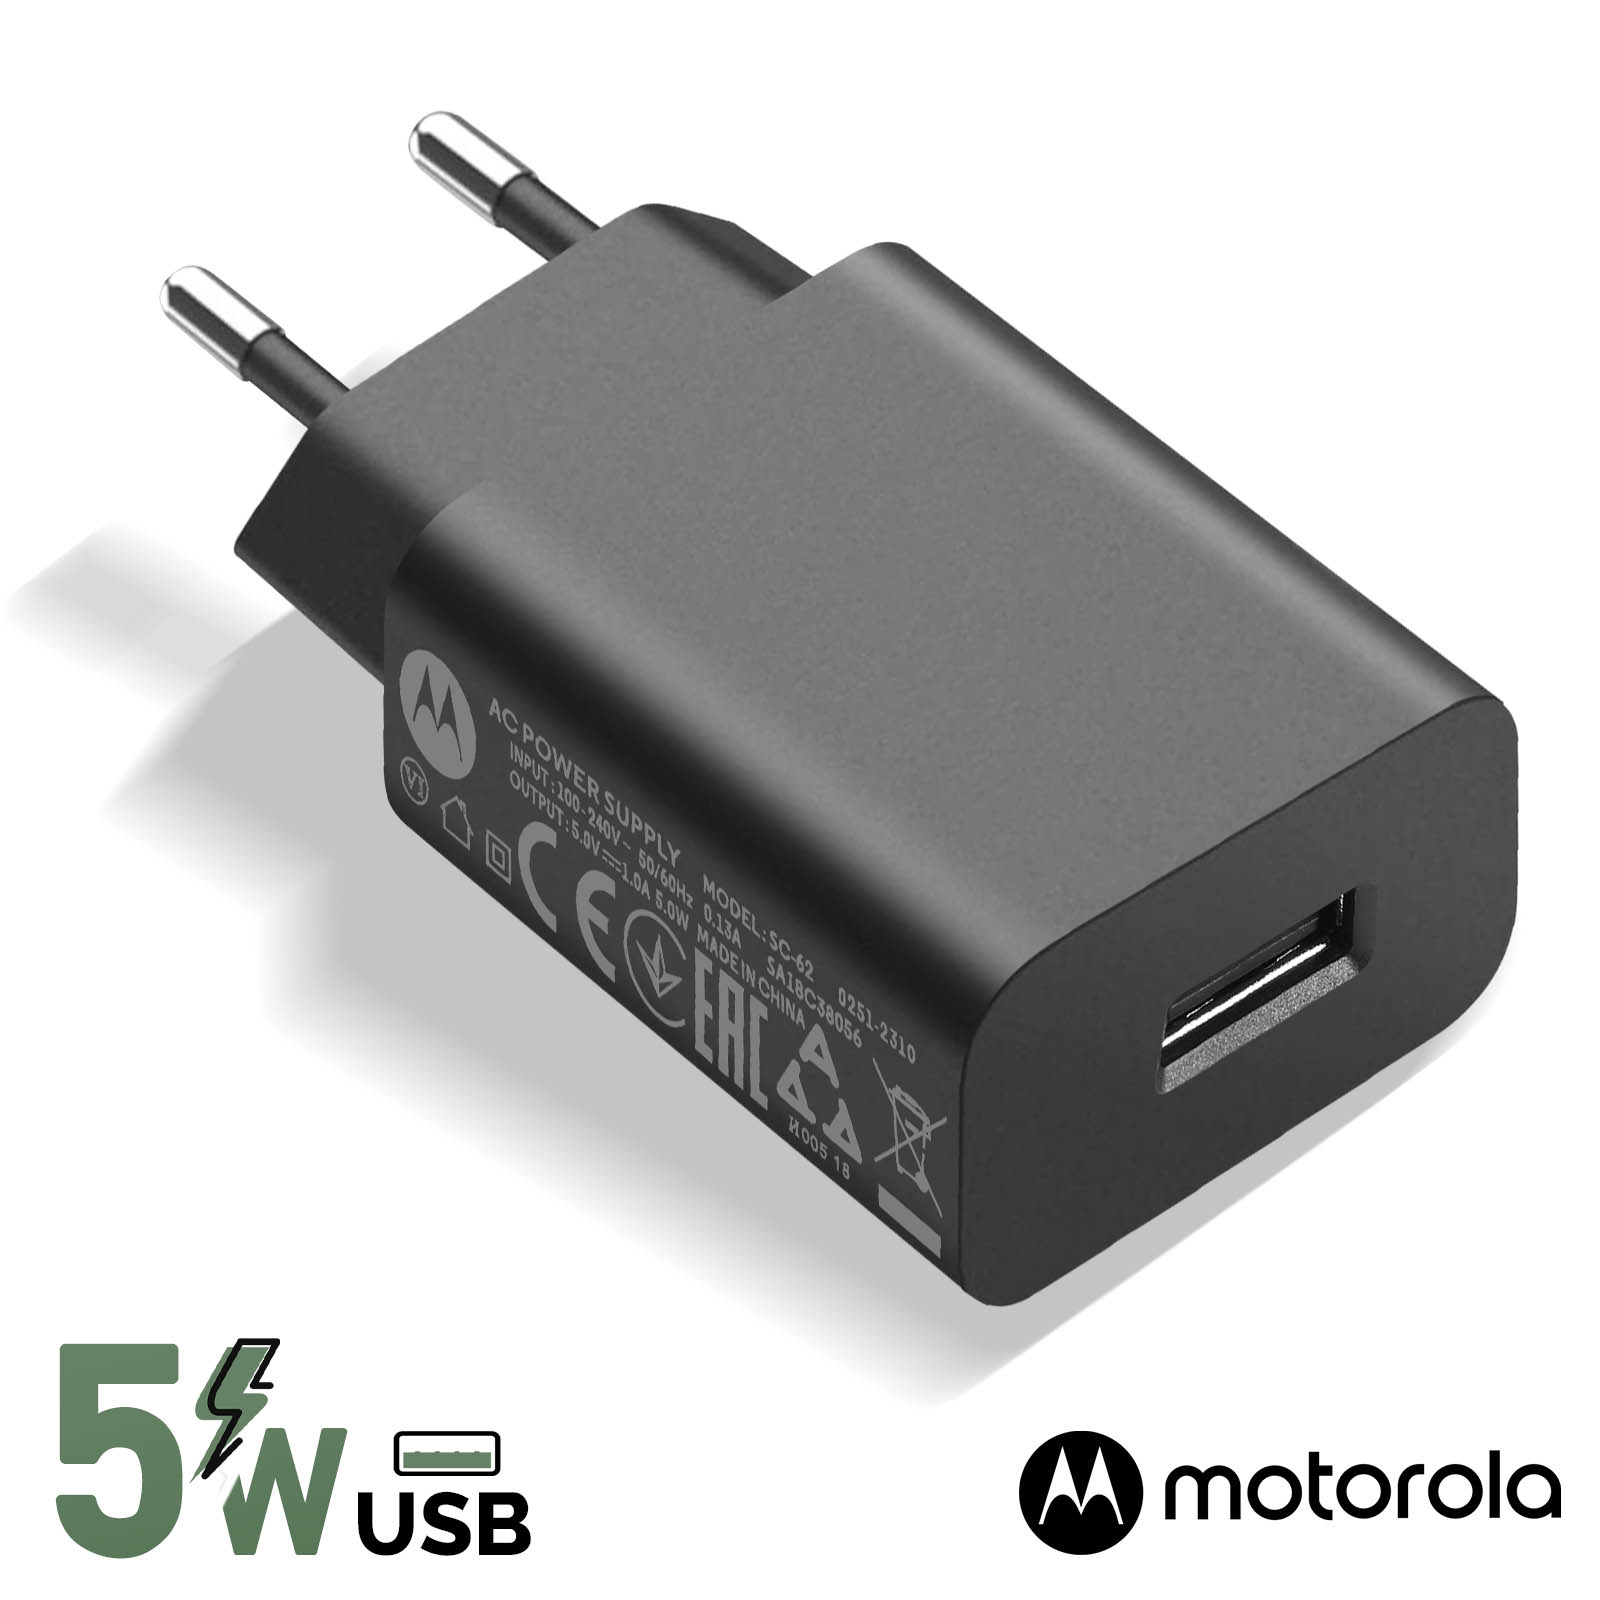 Chargeur rapide + câble USB C de 1,5 m. 22W & 56kOhms. Convient également  au Motorola